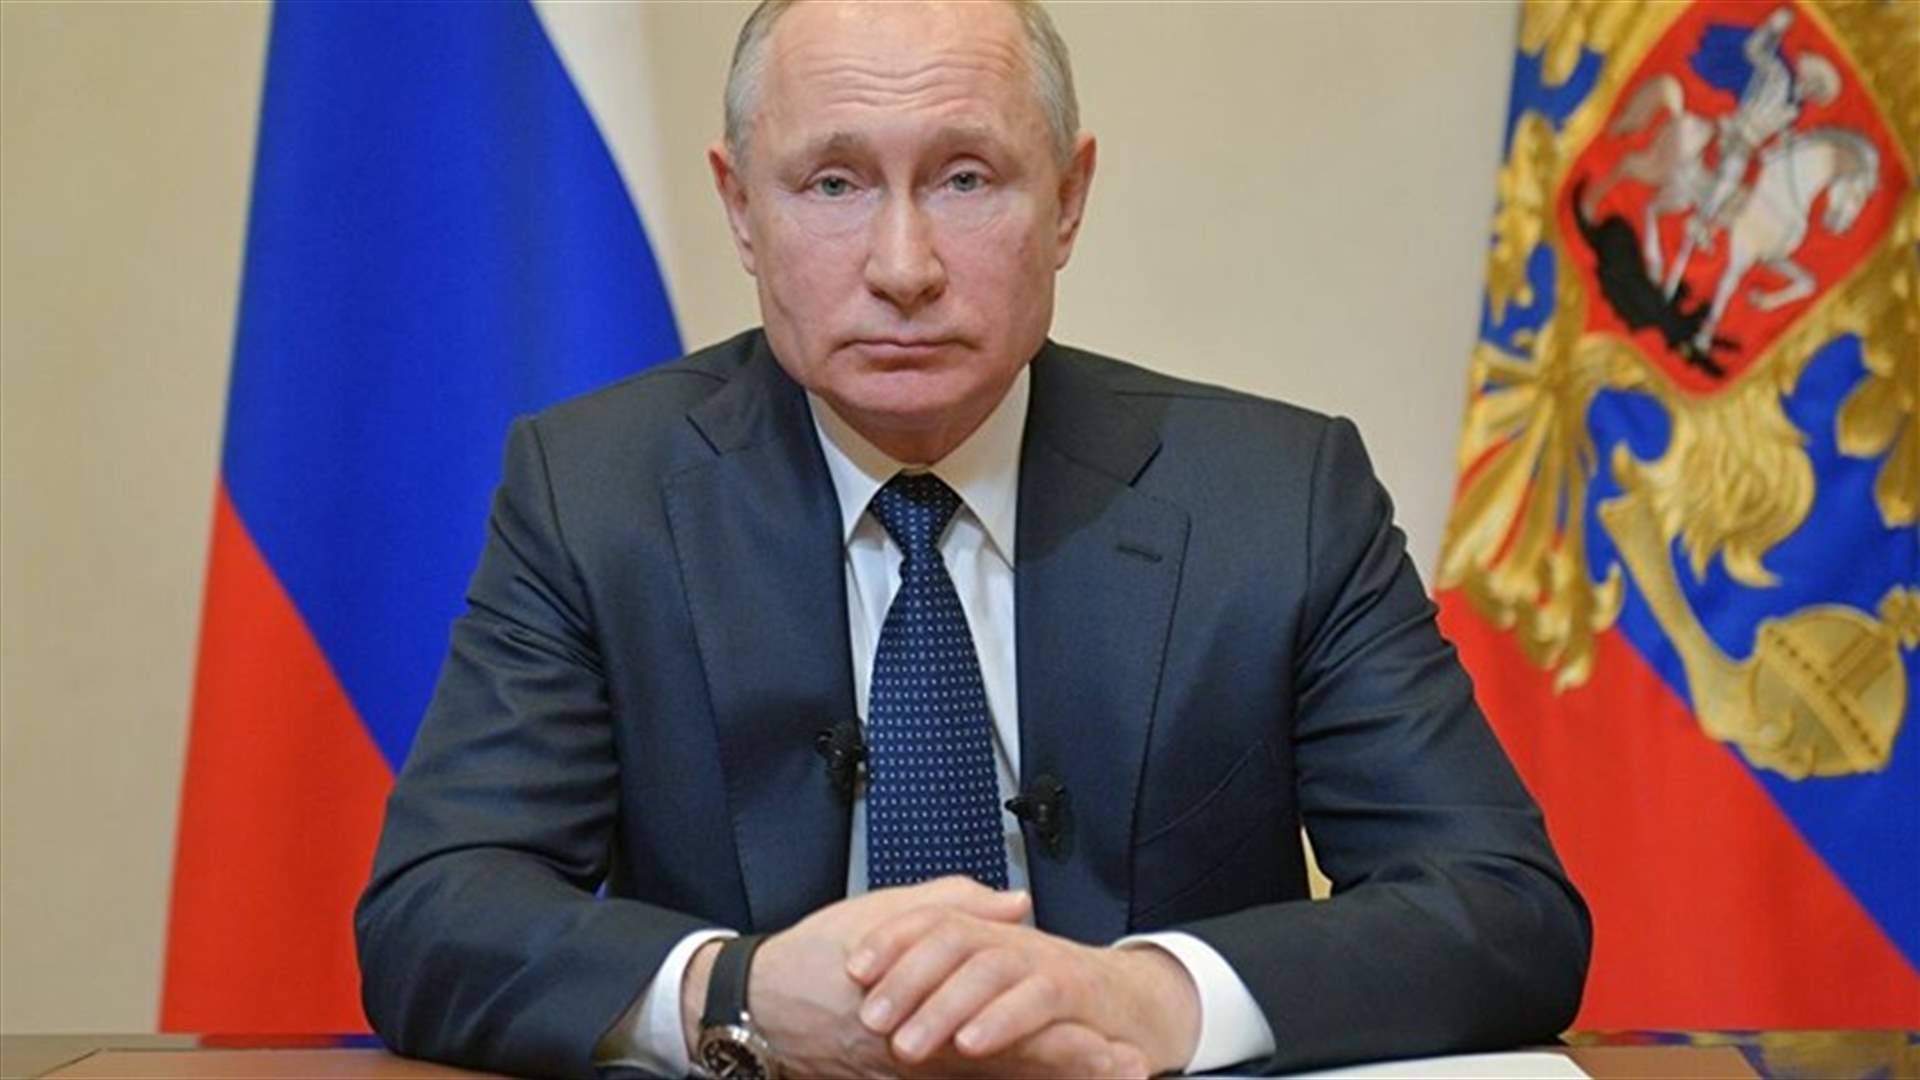 بوتين يعلن شهر نيسان عطلة مدفوعة الراتب